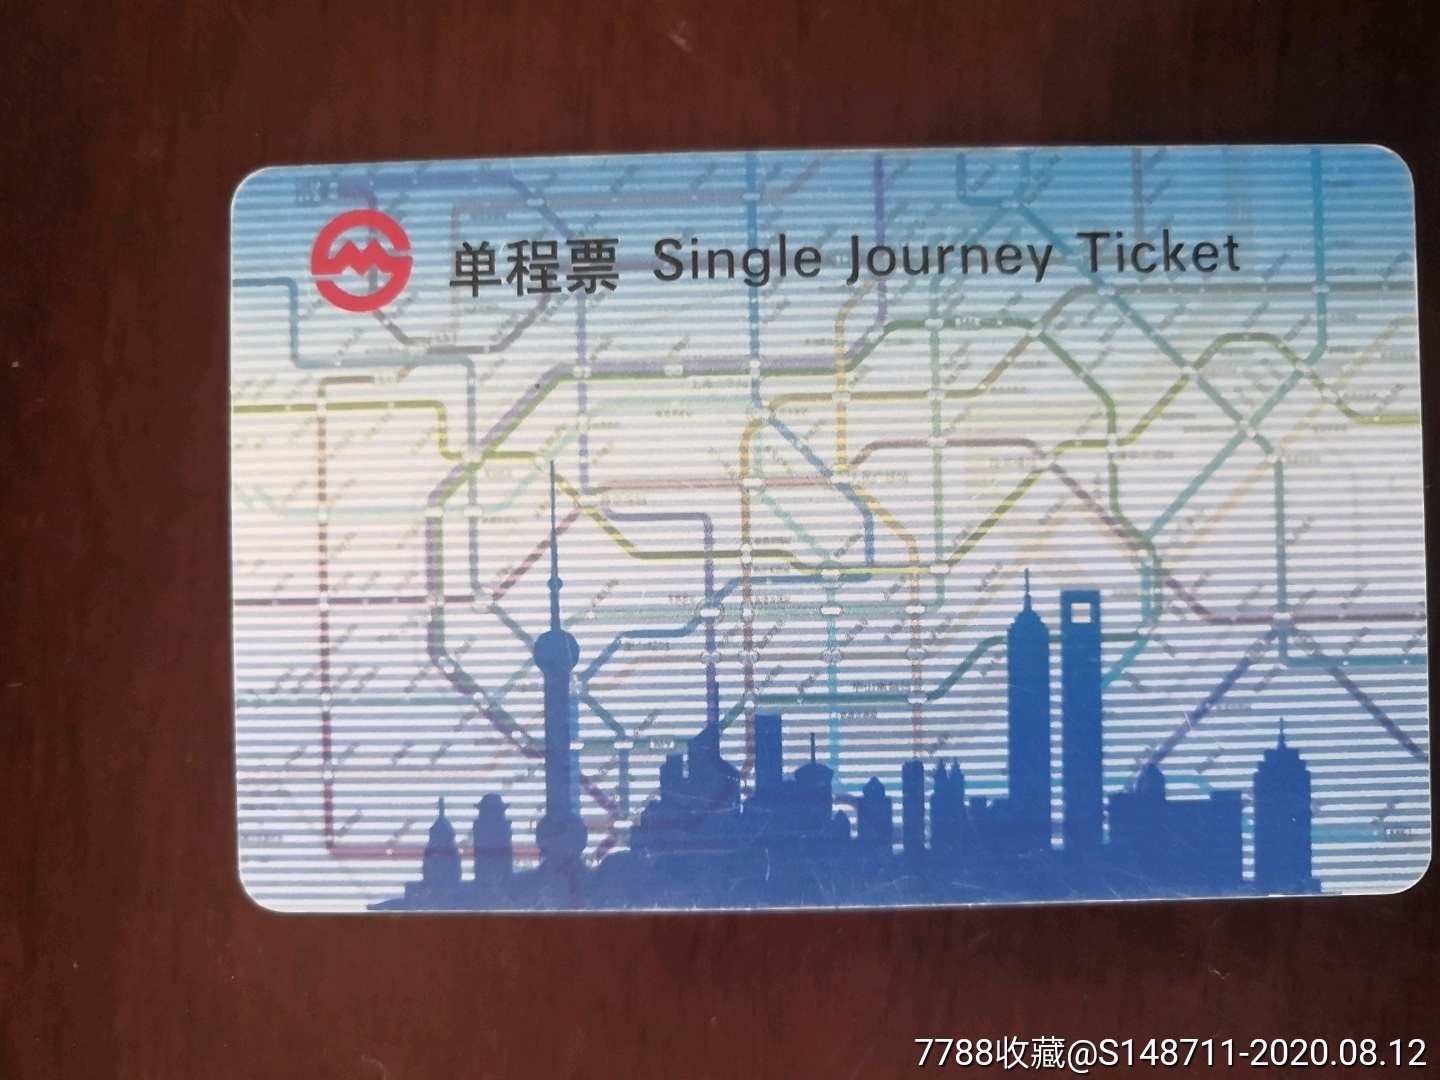 上海地铁单程票pd070701